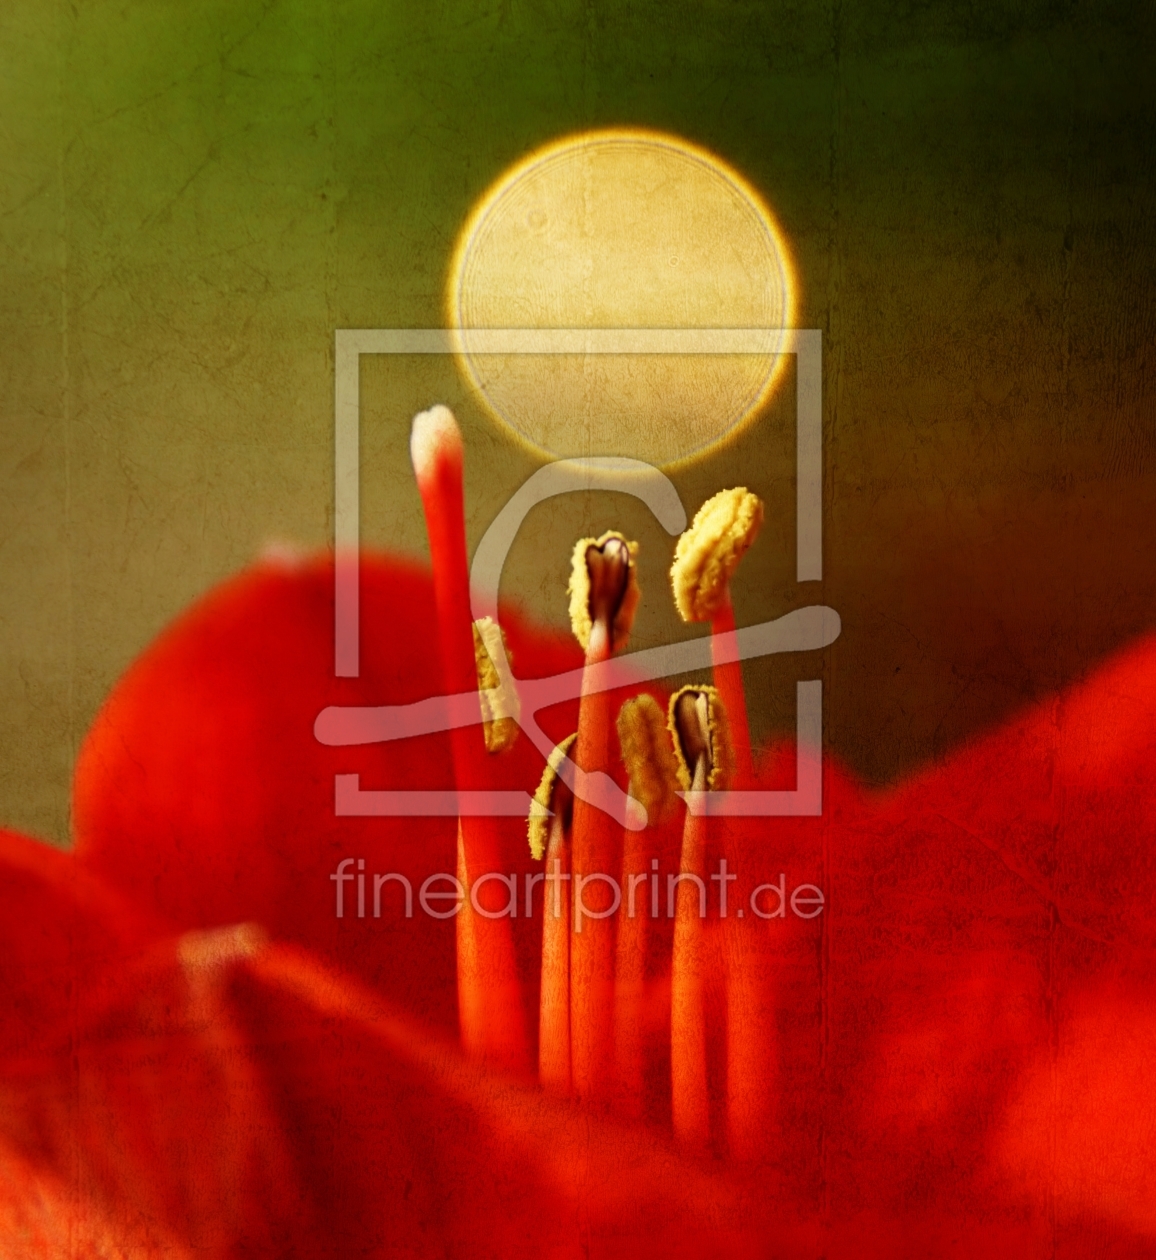 Bild-Nr.: 11398887 Blüte mit Lichtreflex erstellt von youhaveadream